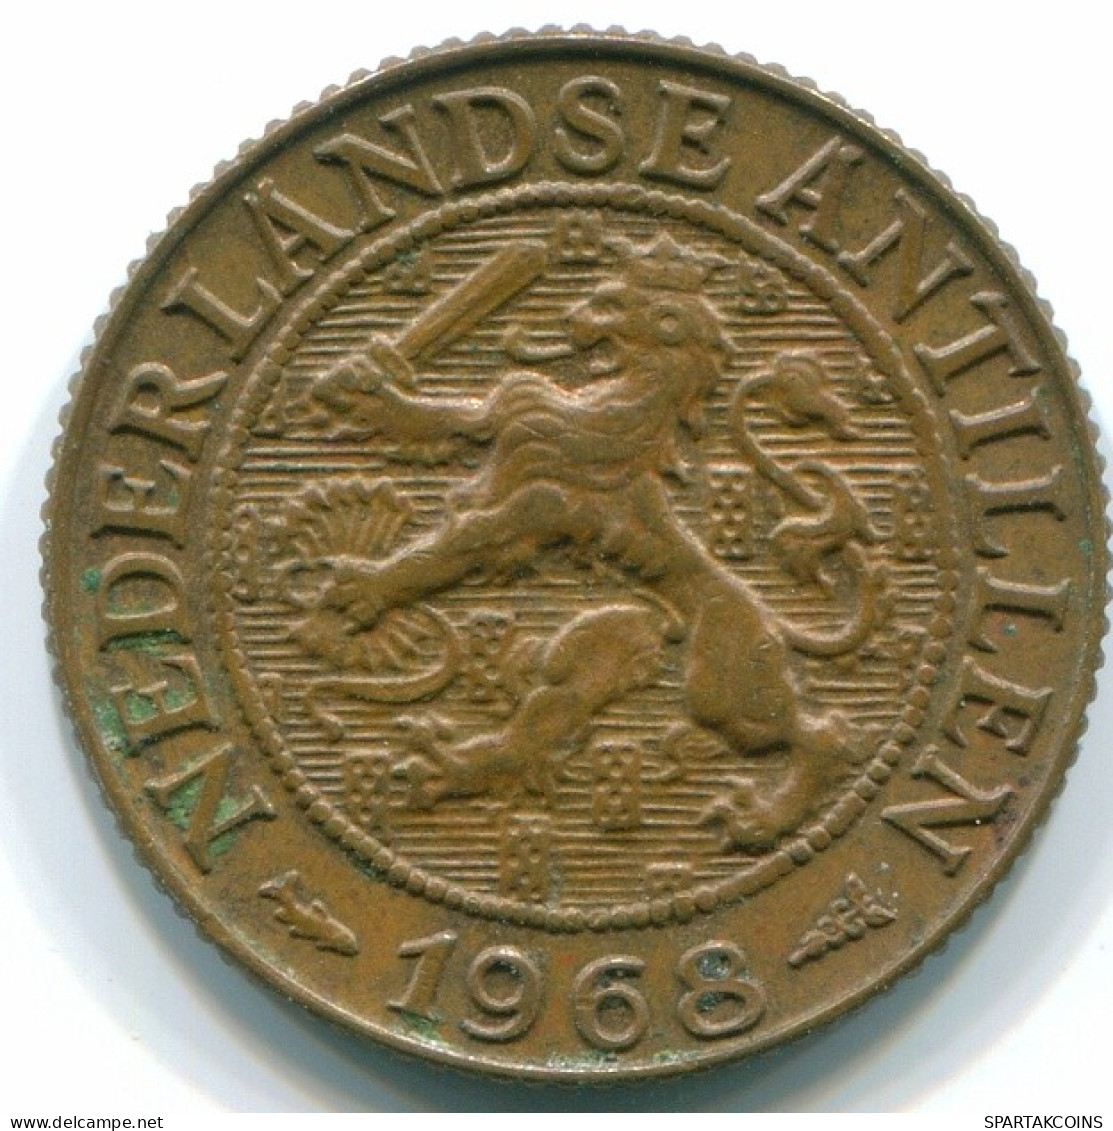 1 CENT 1968 NETHERLANDS ANTILLES Bronze Fish Colonial Coin #S10791.U.A - Antilles Néerlandaises